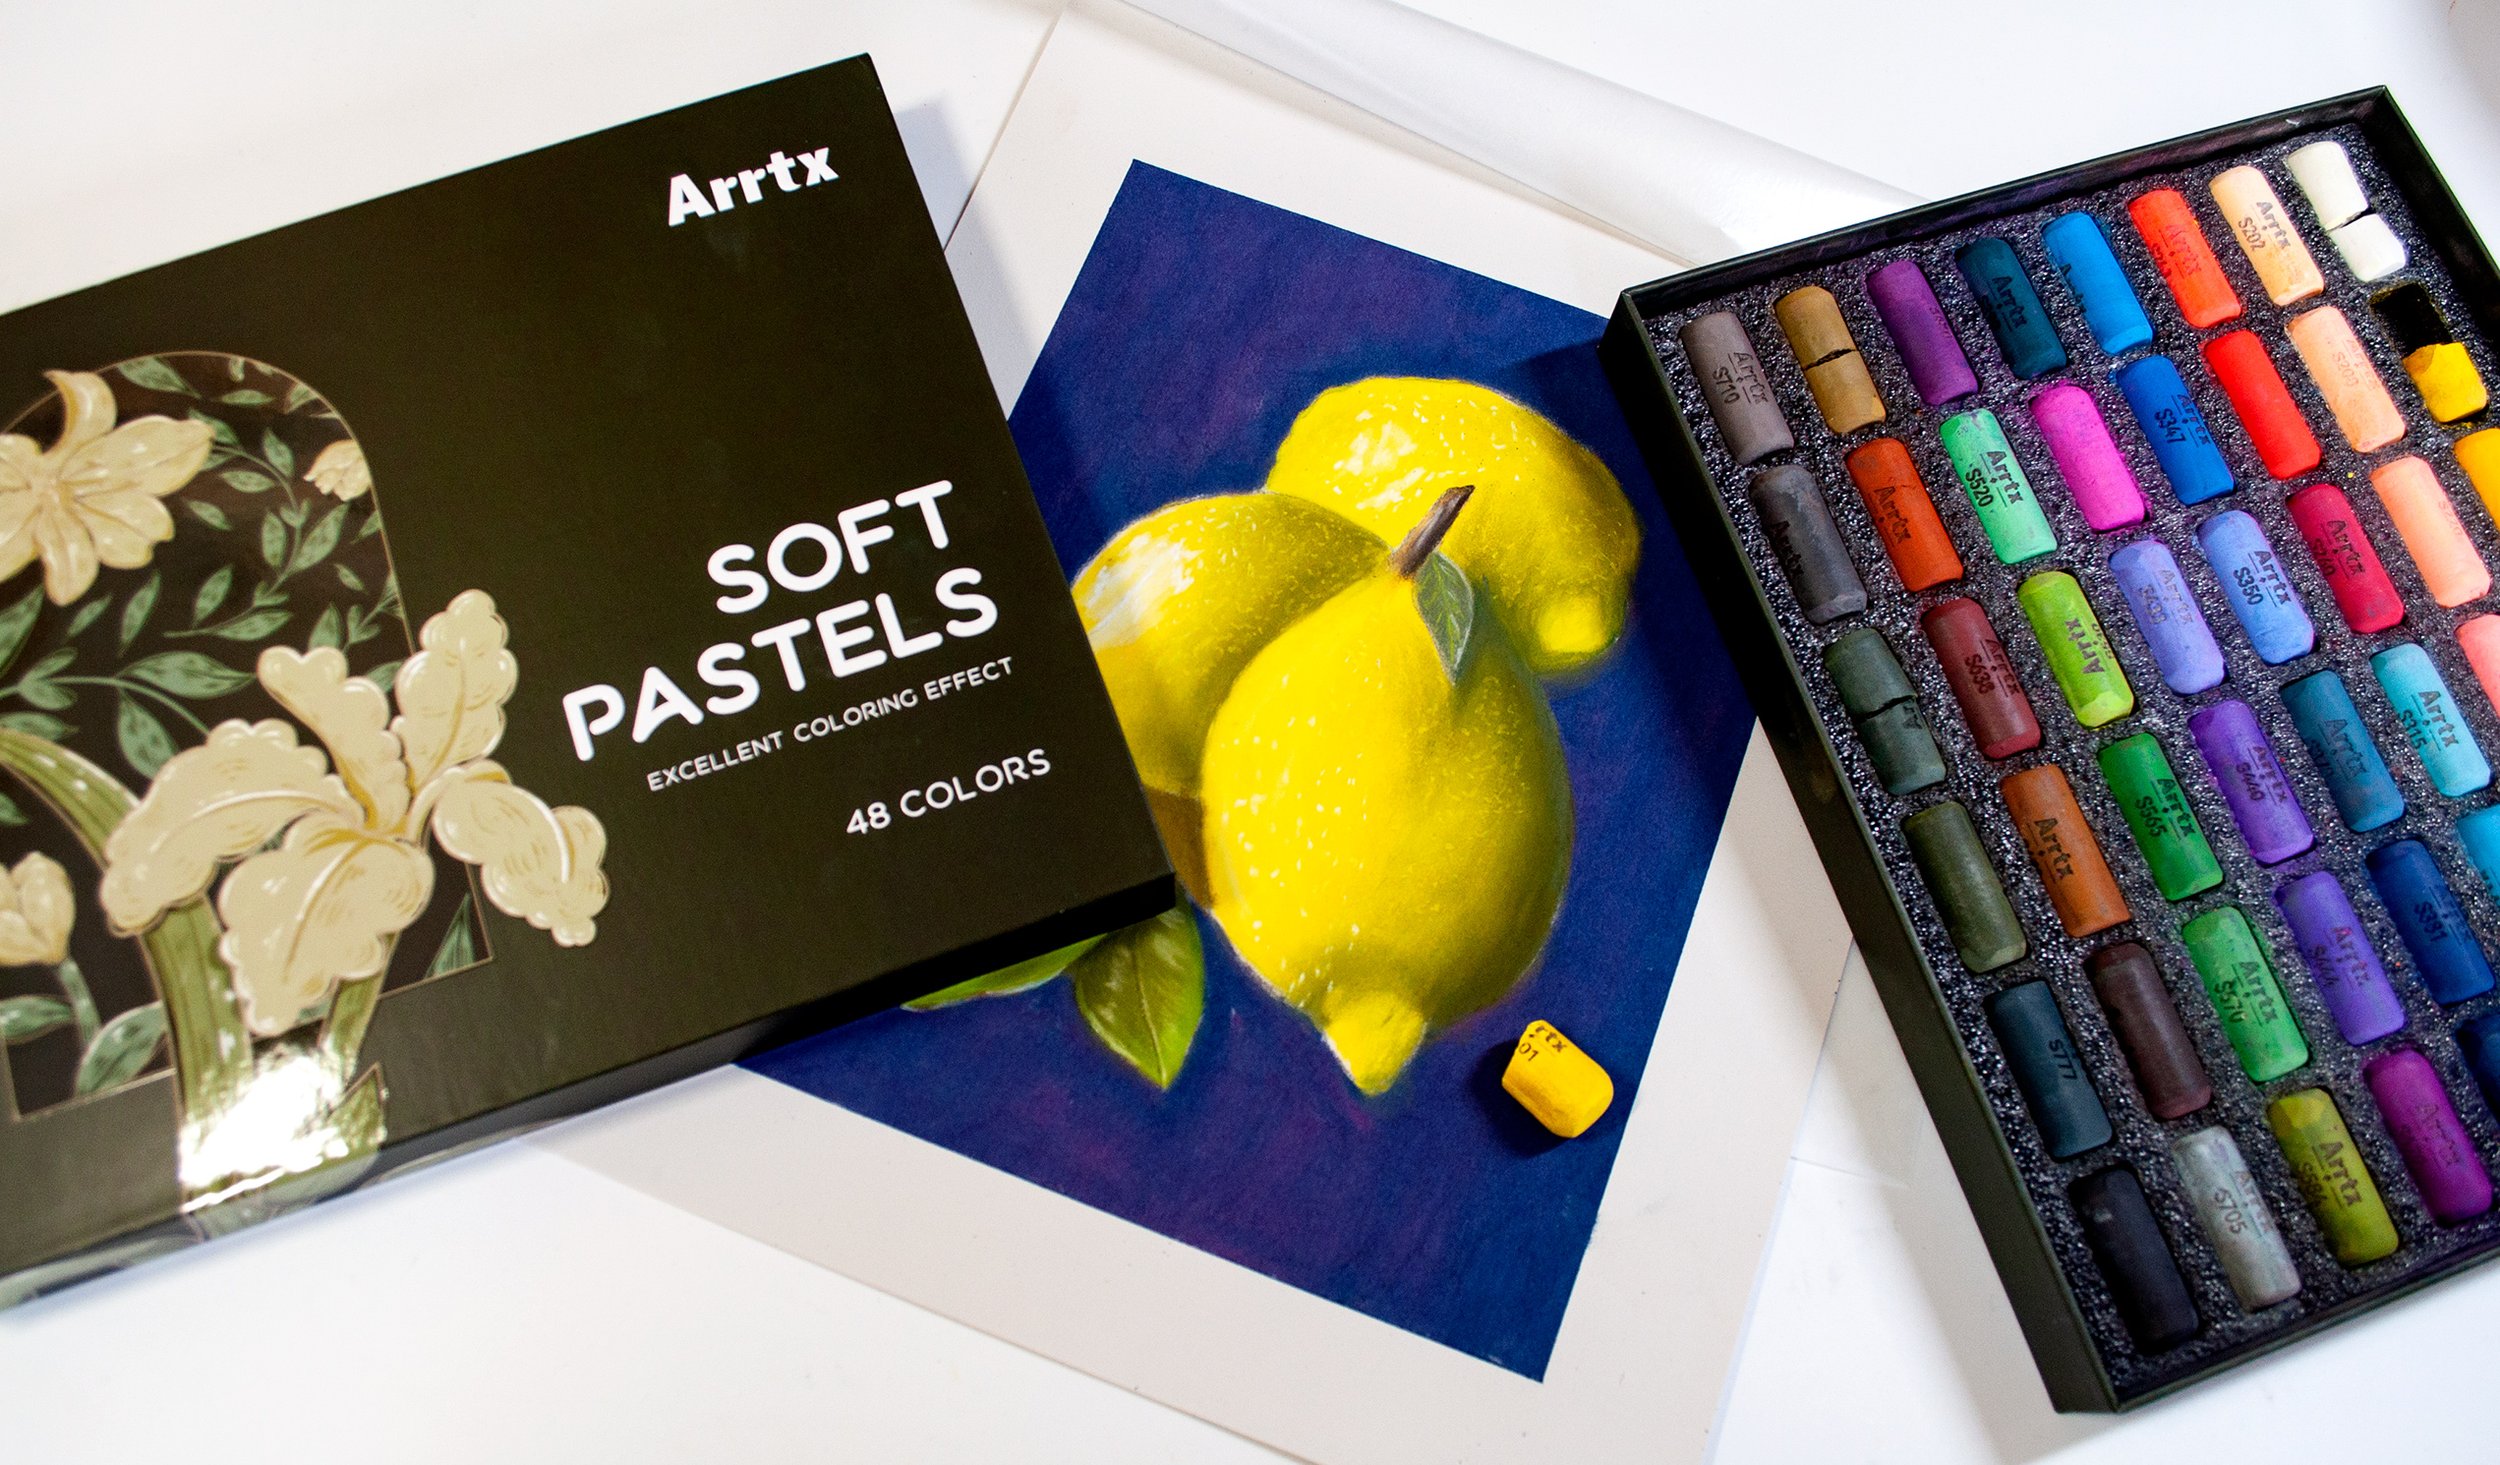 Arrtx 48 Colors Soft Pastels Set Non-toxic – ArrtxArt